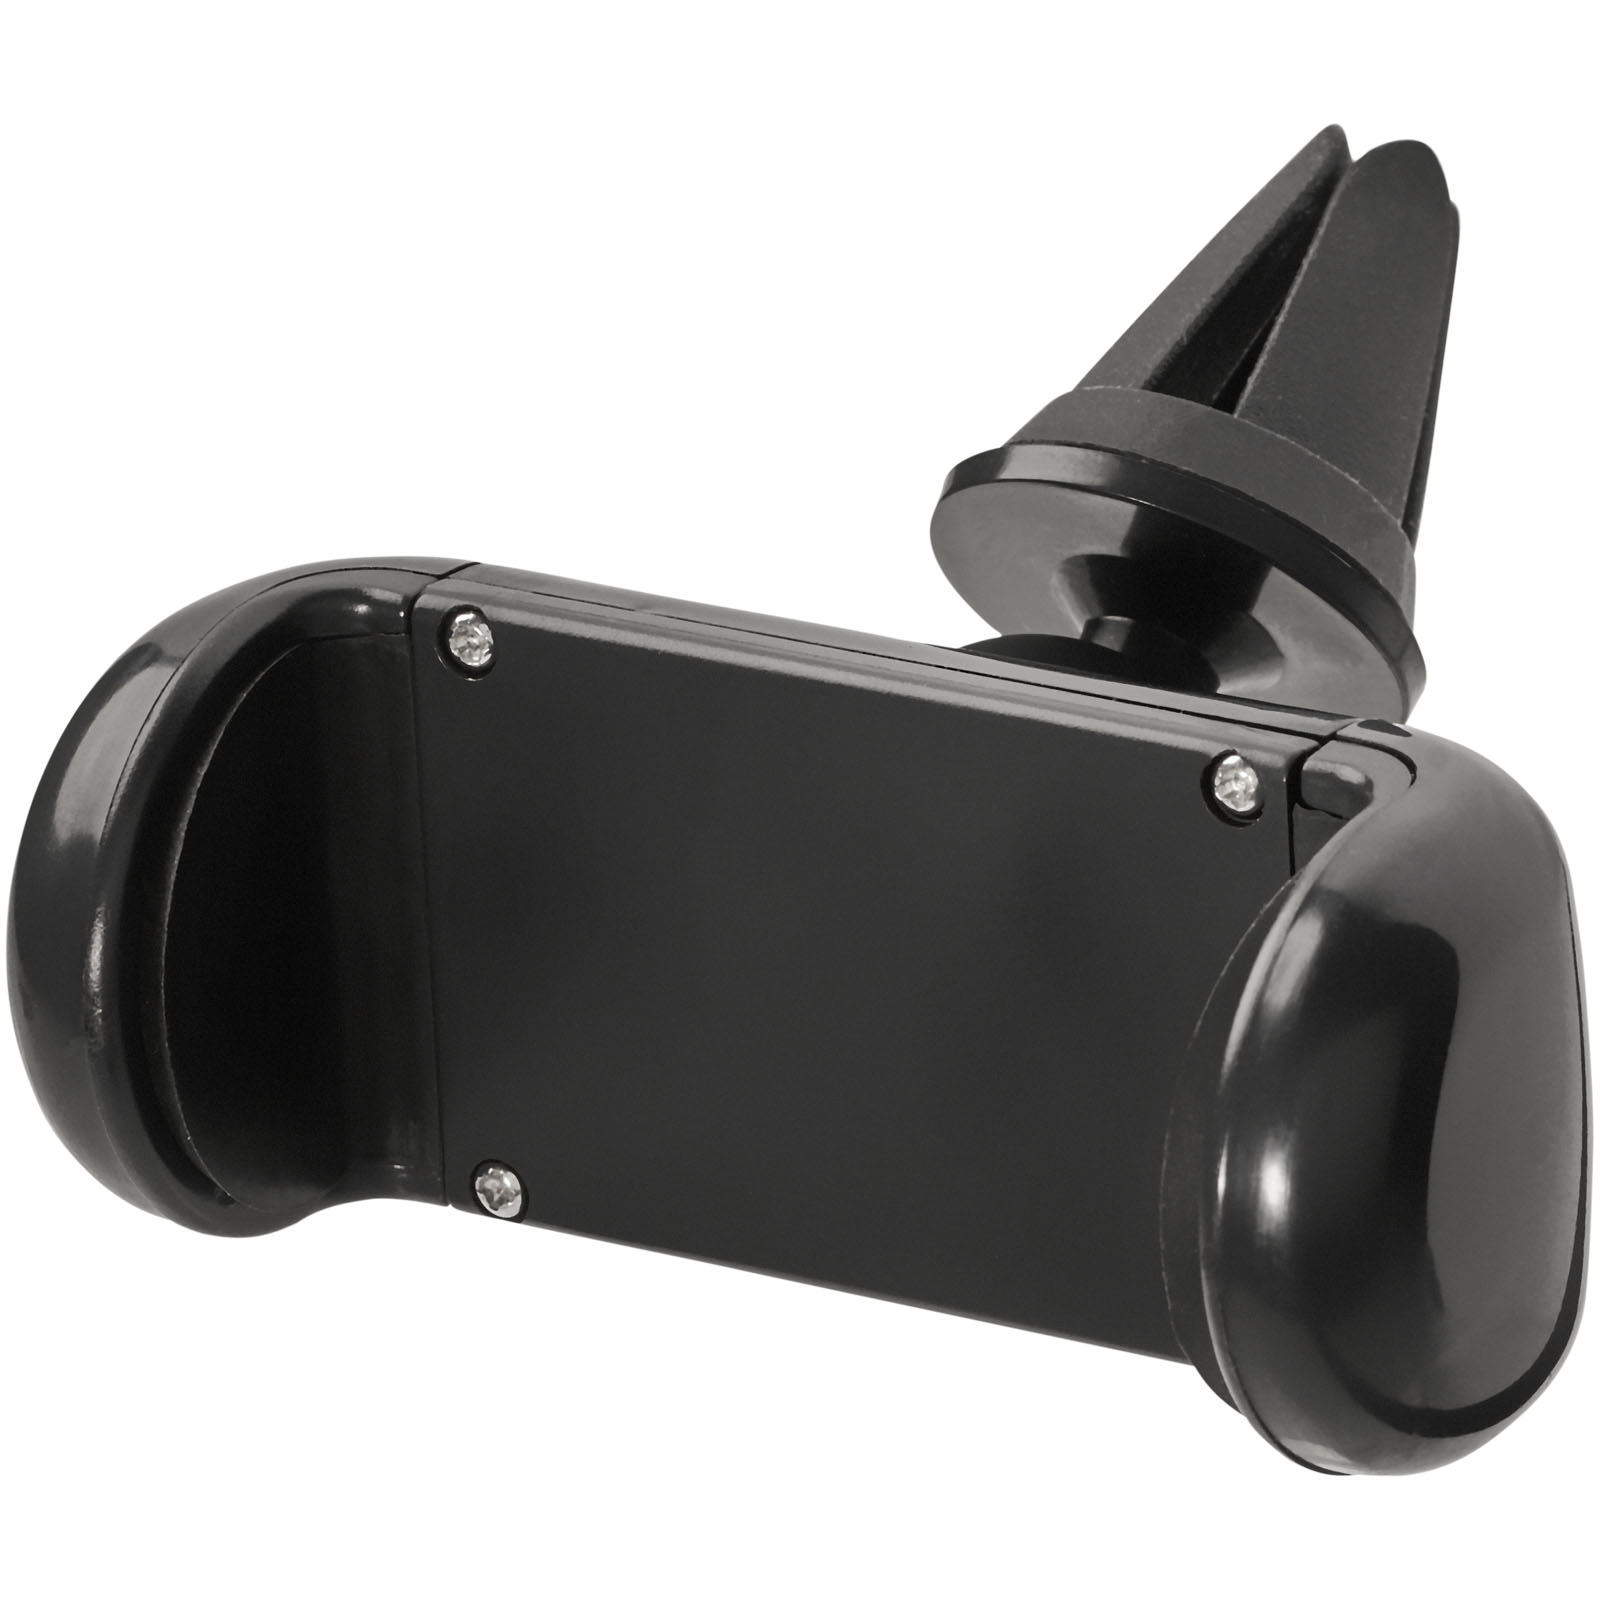 Plastový držák telefonu do auta AMBLER - solid black